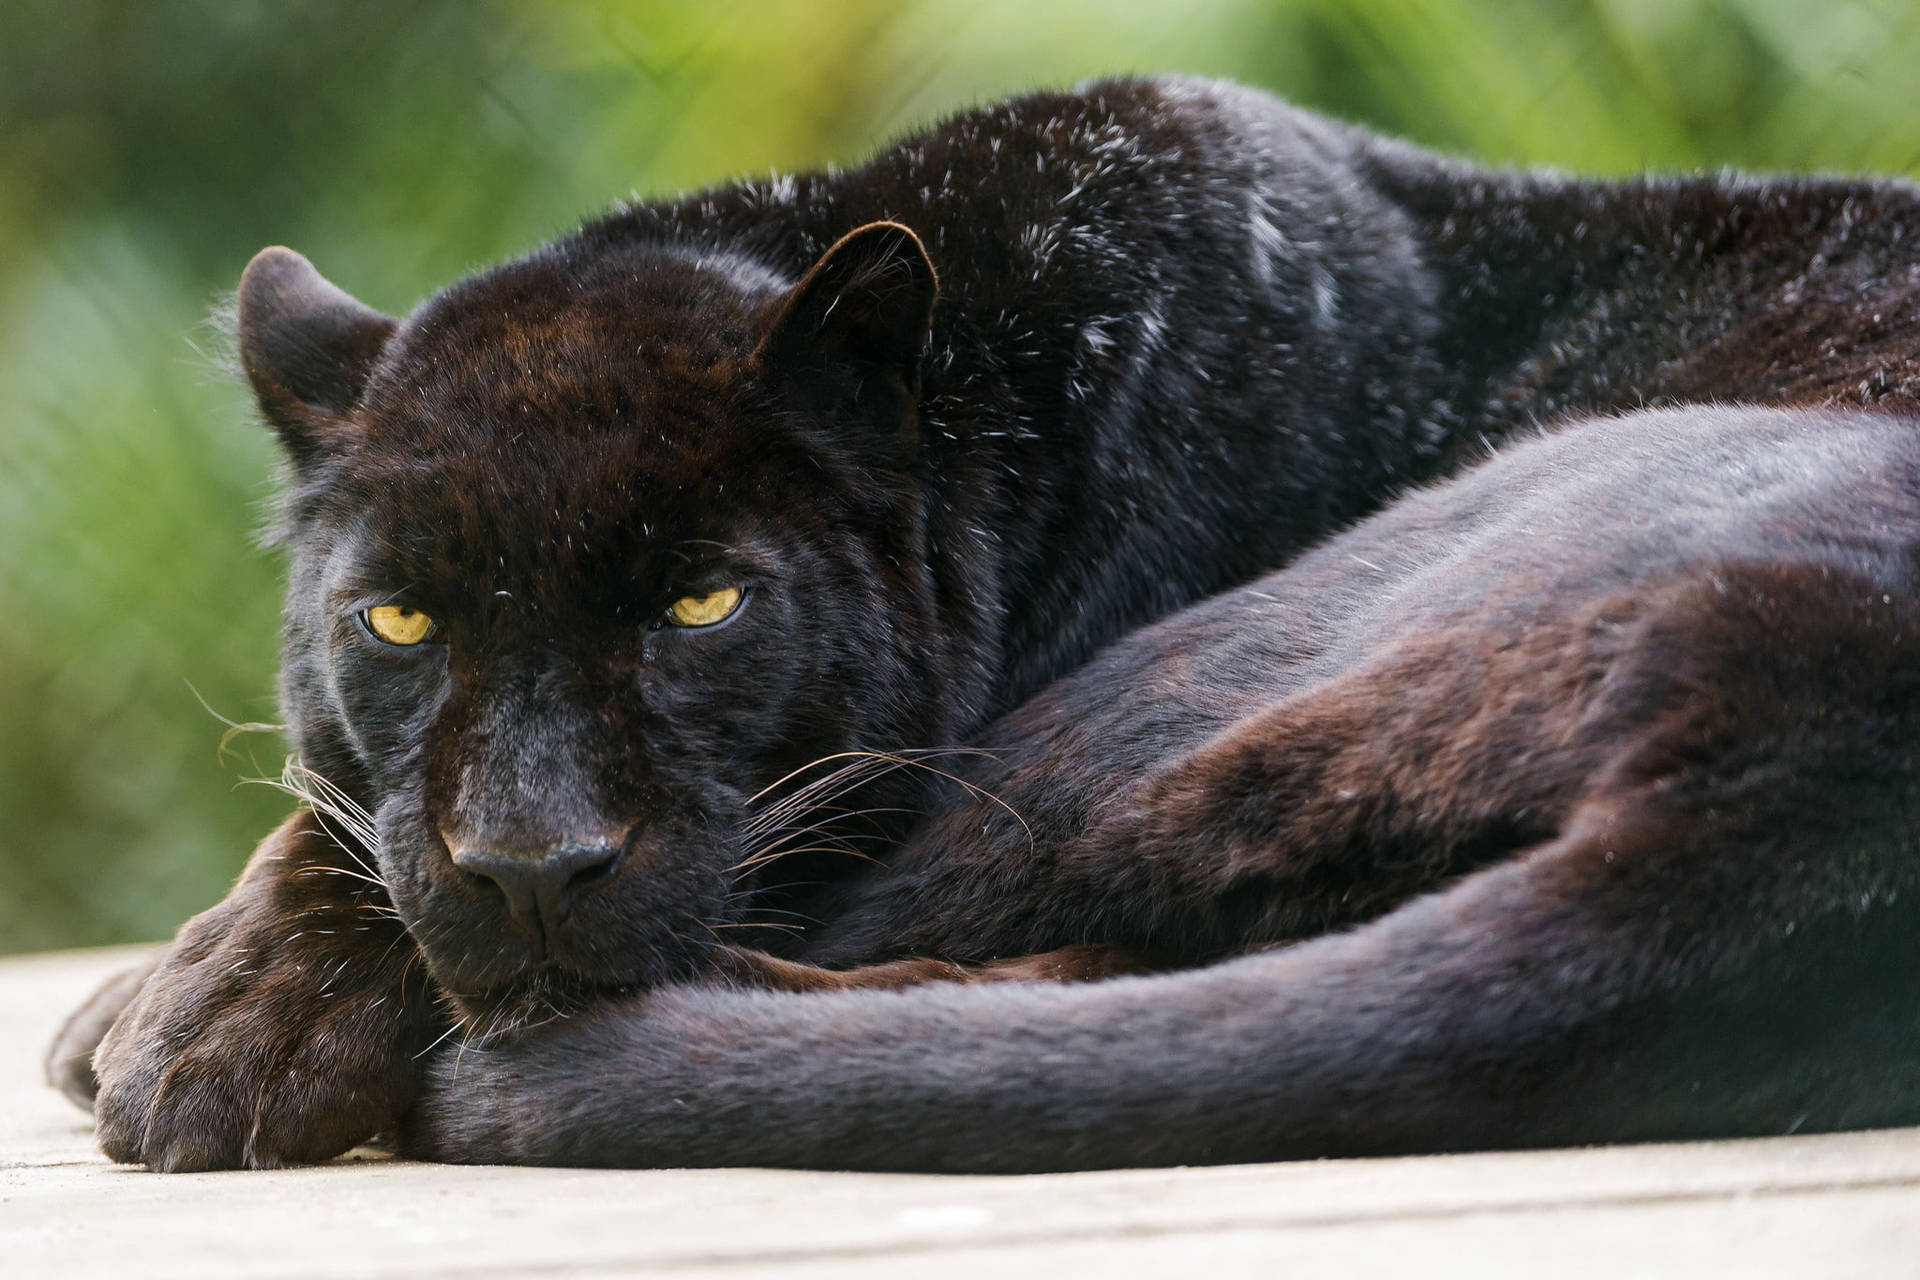 Free Black Panther Animal Wallpaper Downloads, [100+] Black Panther Animal  Wallpapers for FREE 